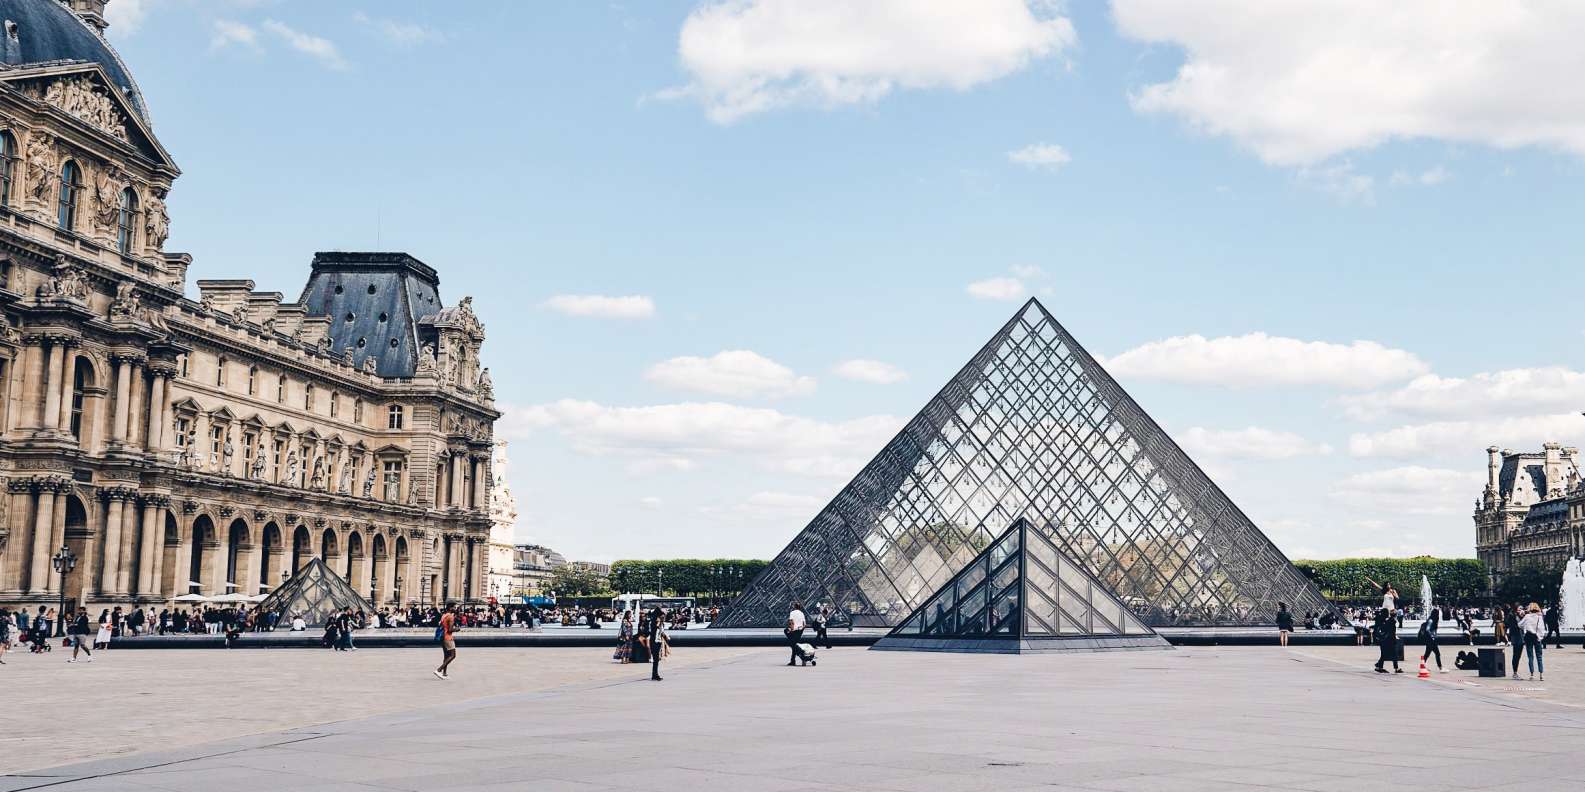 The 18 Best Paris Guide Books: Explore the Real Paris